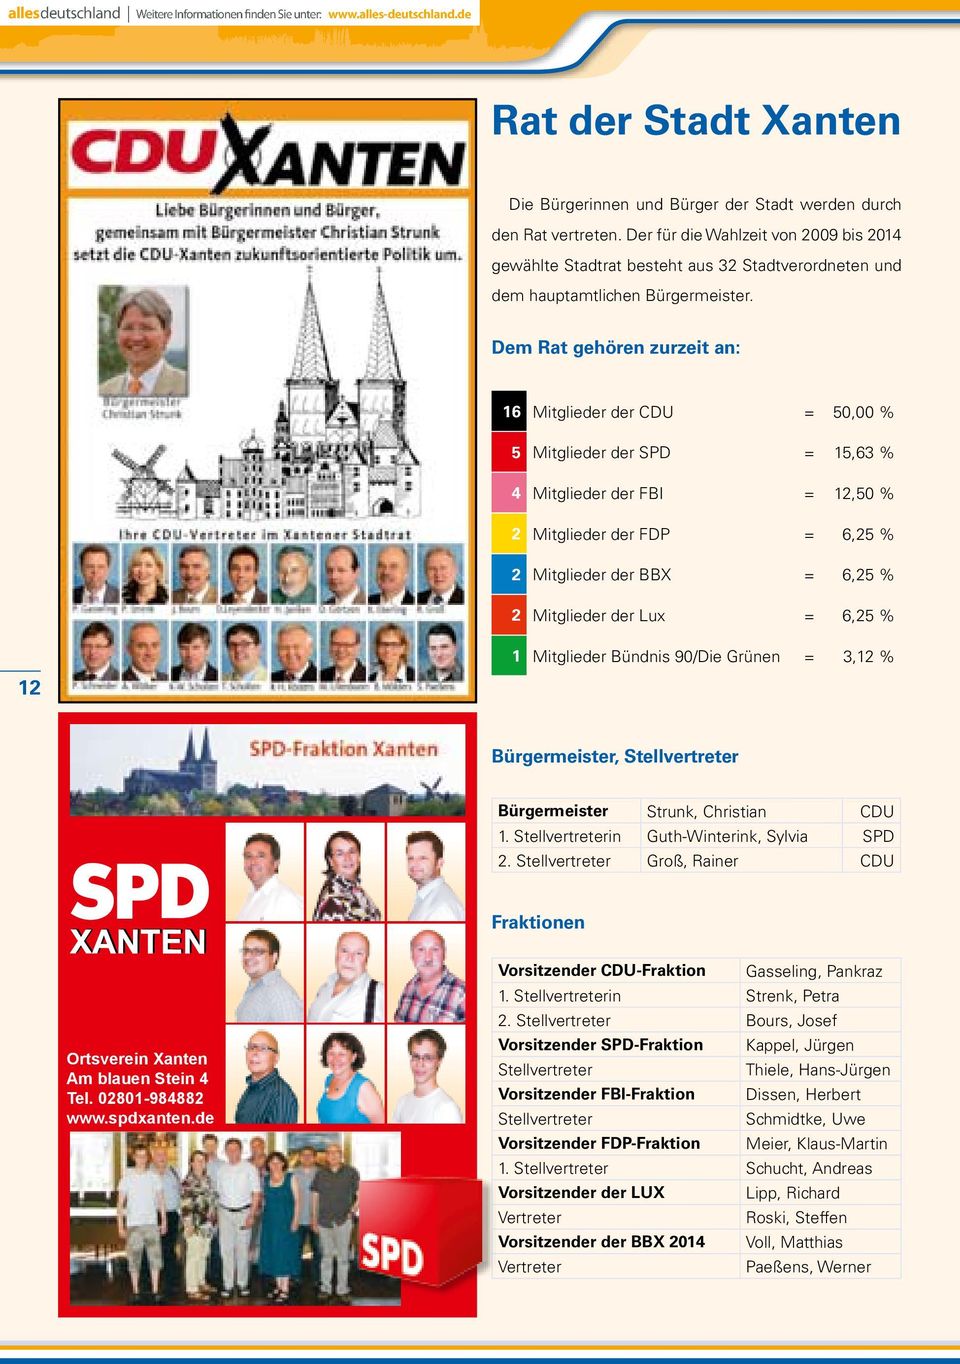 Dem Rat gehören zurzeit an: 16 Mitglieder der CDU = 50,00 % 5 Mitglieder der SPD = 15,63 % 4 Mitglieder der FBI = 12,50 % 2 Mitglieder der FDP = 6,25 % 2 Mitglieder der BBX = 6,25 % 2 Mitglieder der